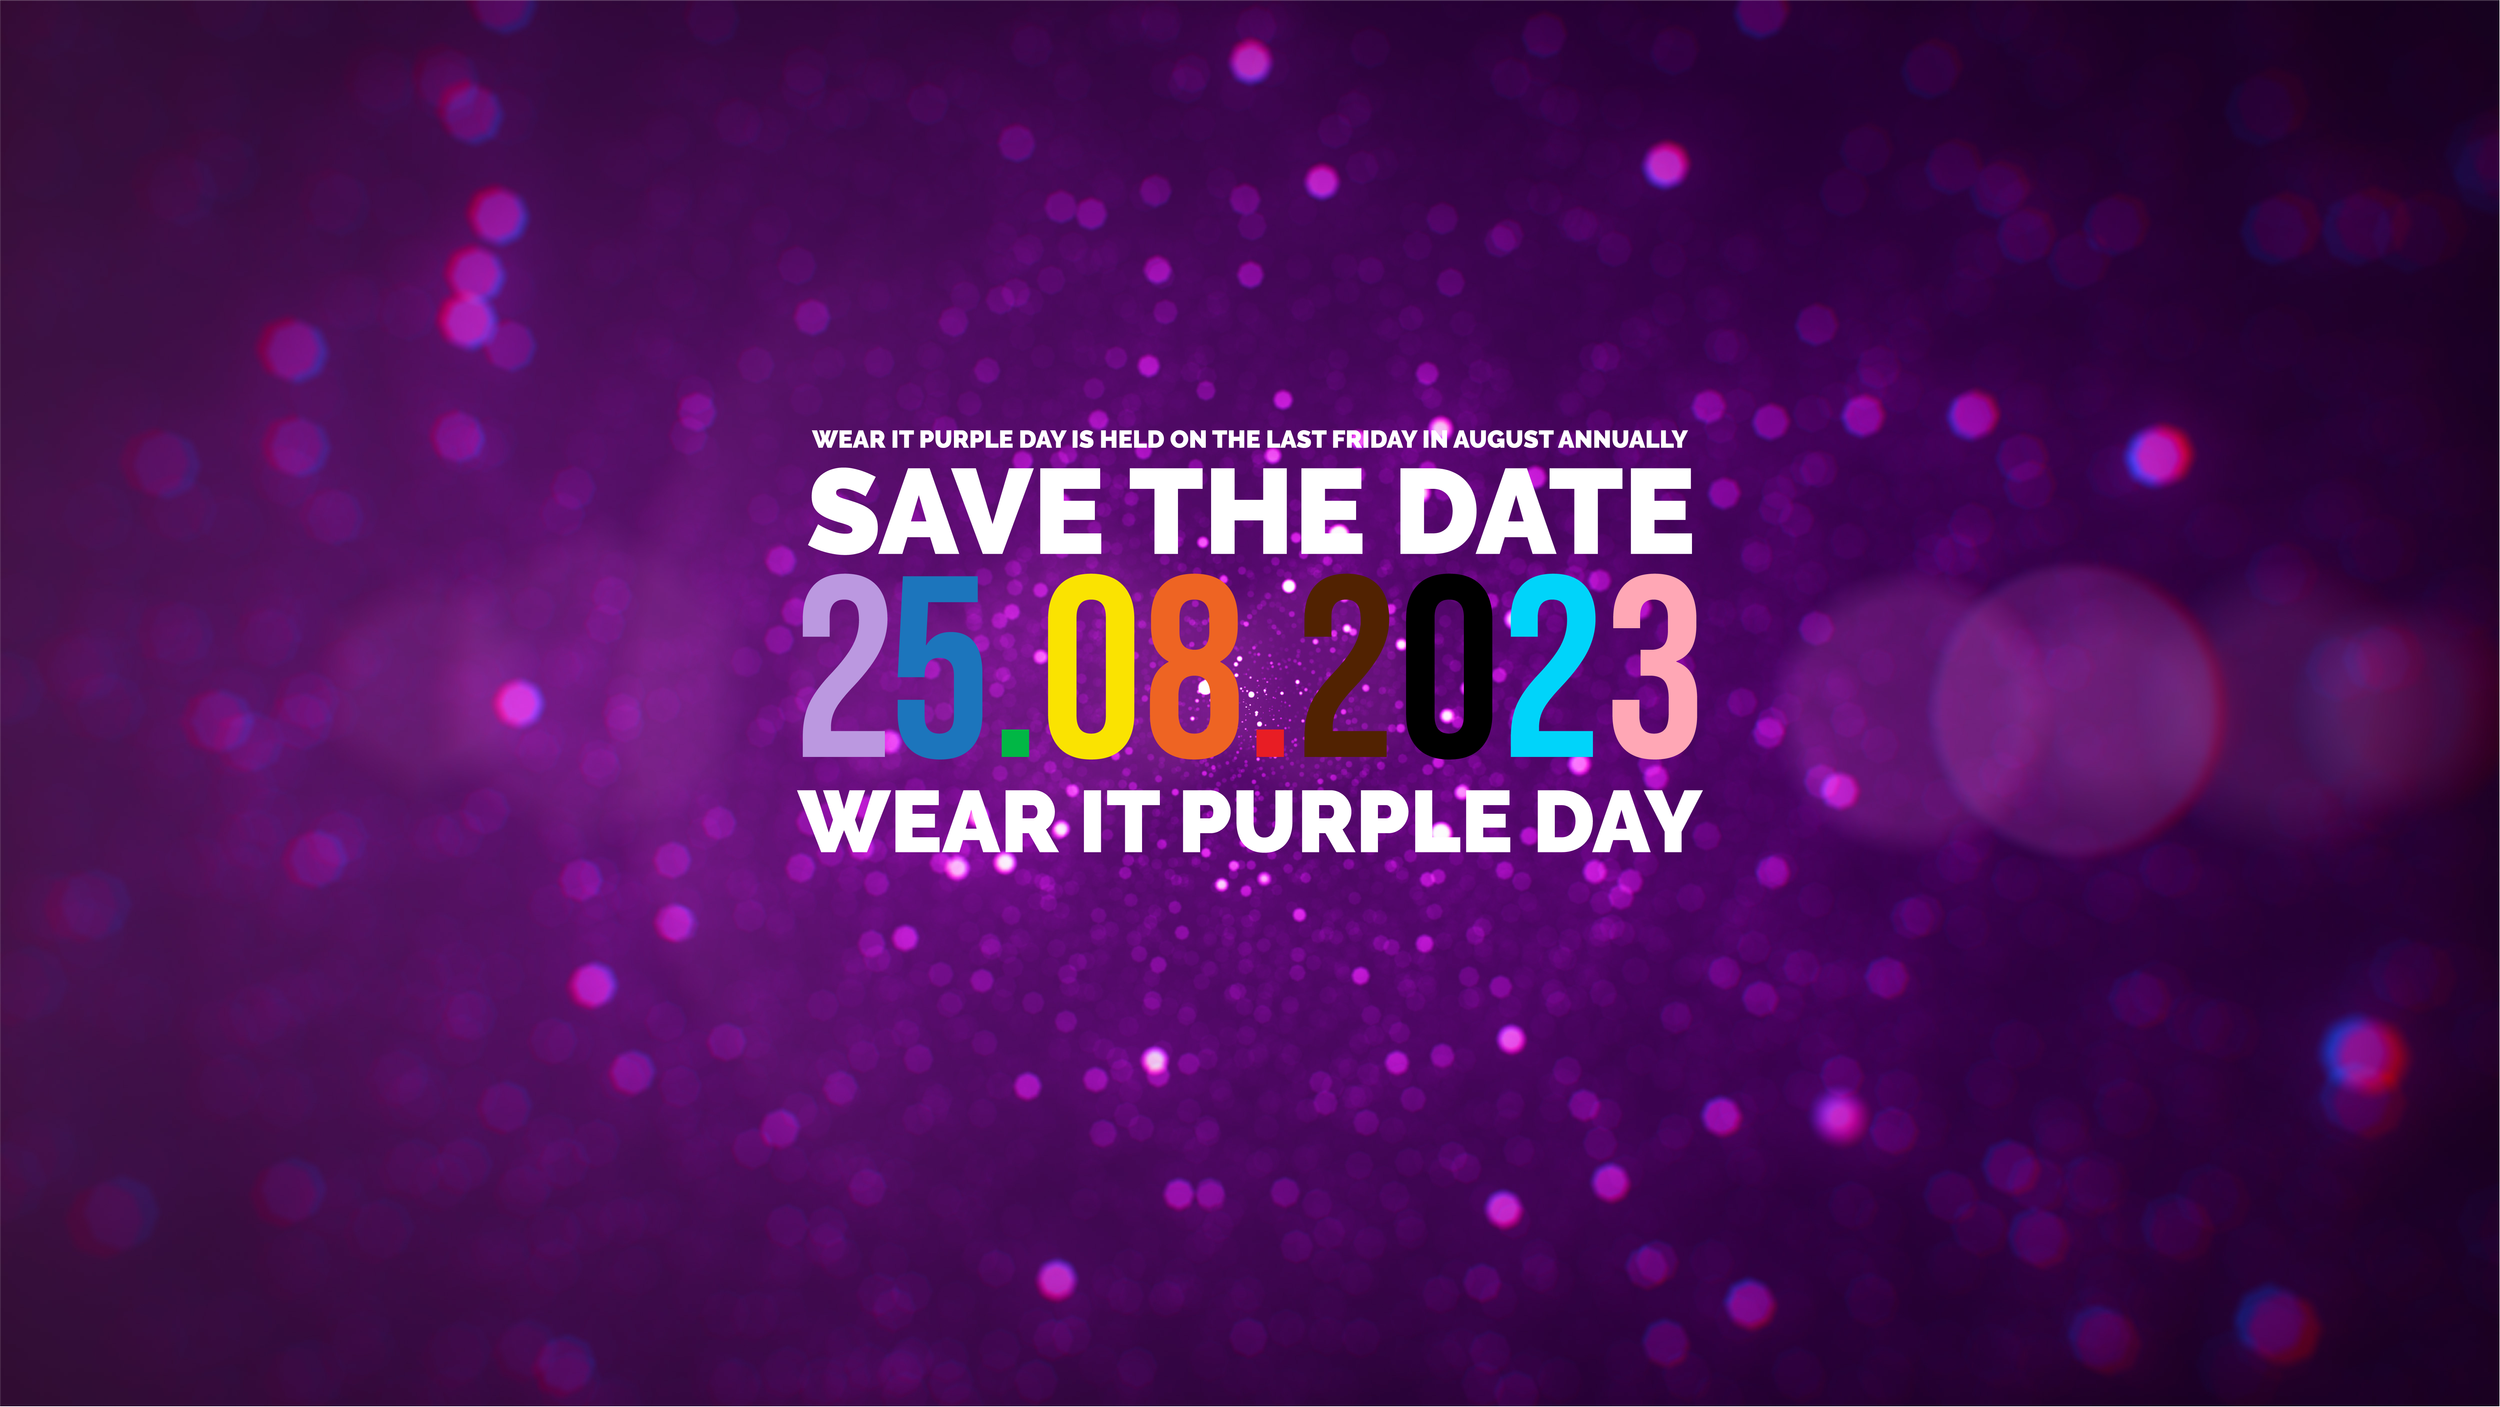 Wear it purple - chúng ta cùng nhau ủng hộ và tôn vinh sự đa dạng và thể hiện sự ủng hộ cho người LGBTIQ+. Hãy xem hình ảnh liên quan để cảm nhận sức mạnh và sự đa dạng của cộng đồng này.